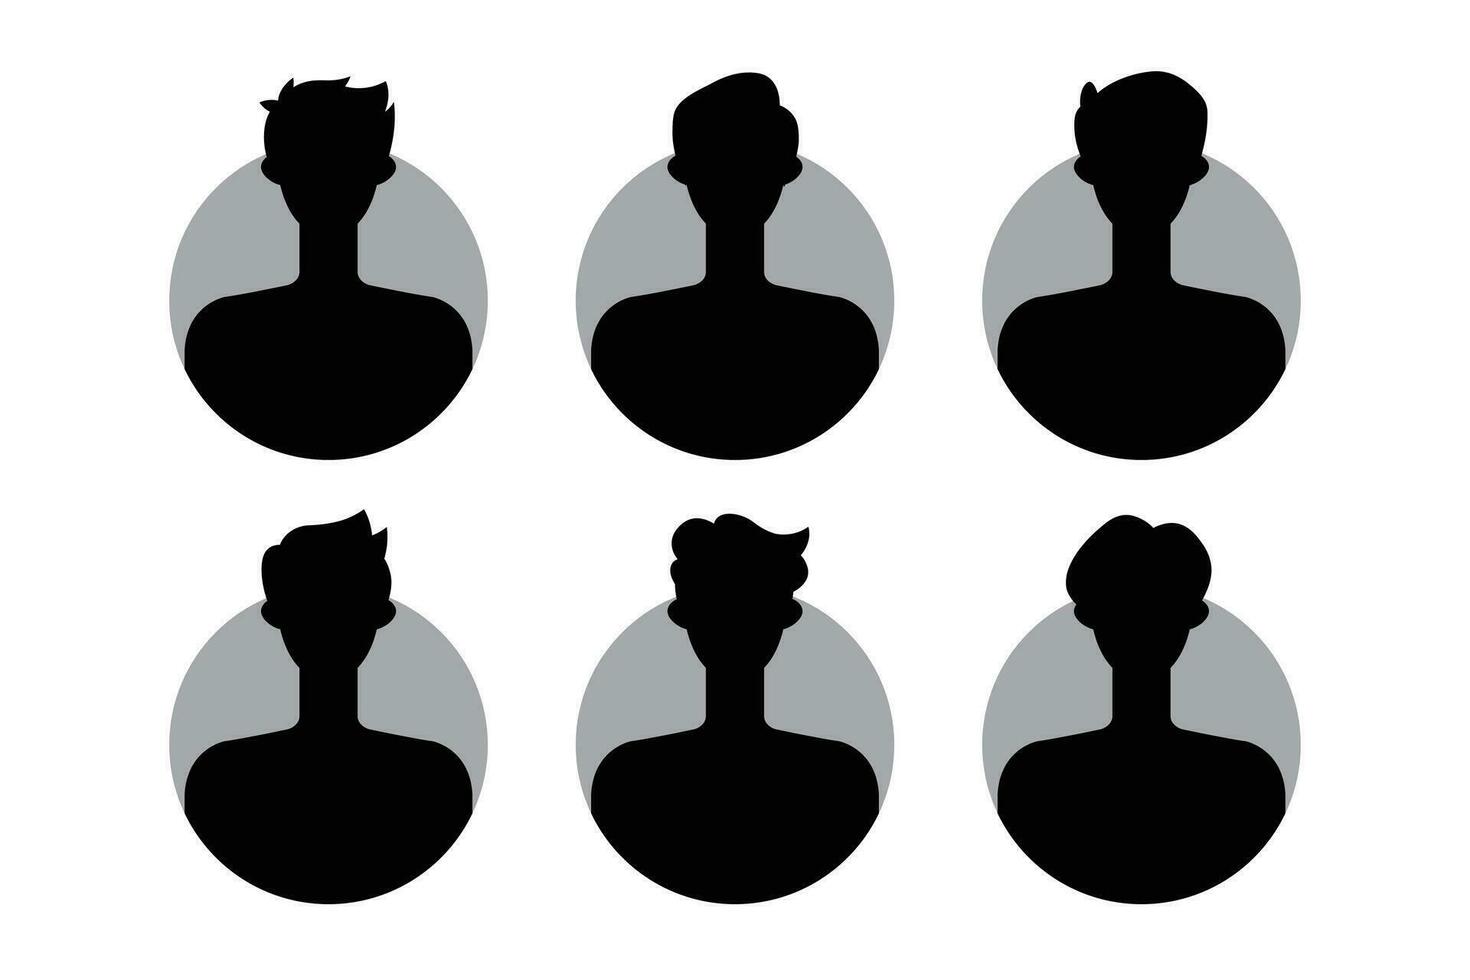 silhouet van een Mens en vrouw met verschillend kapsels. vector illustratie.